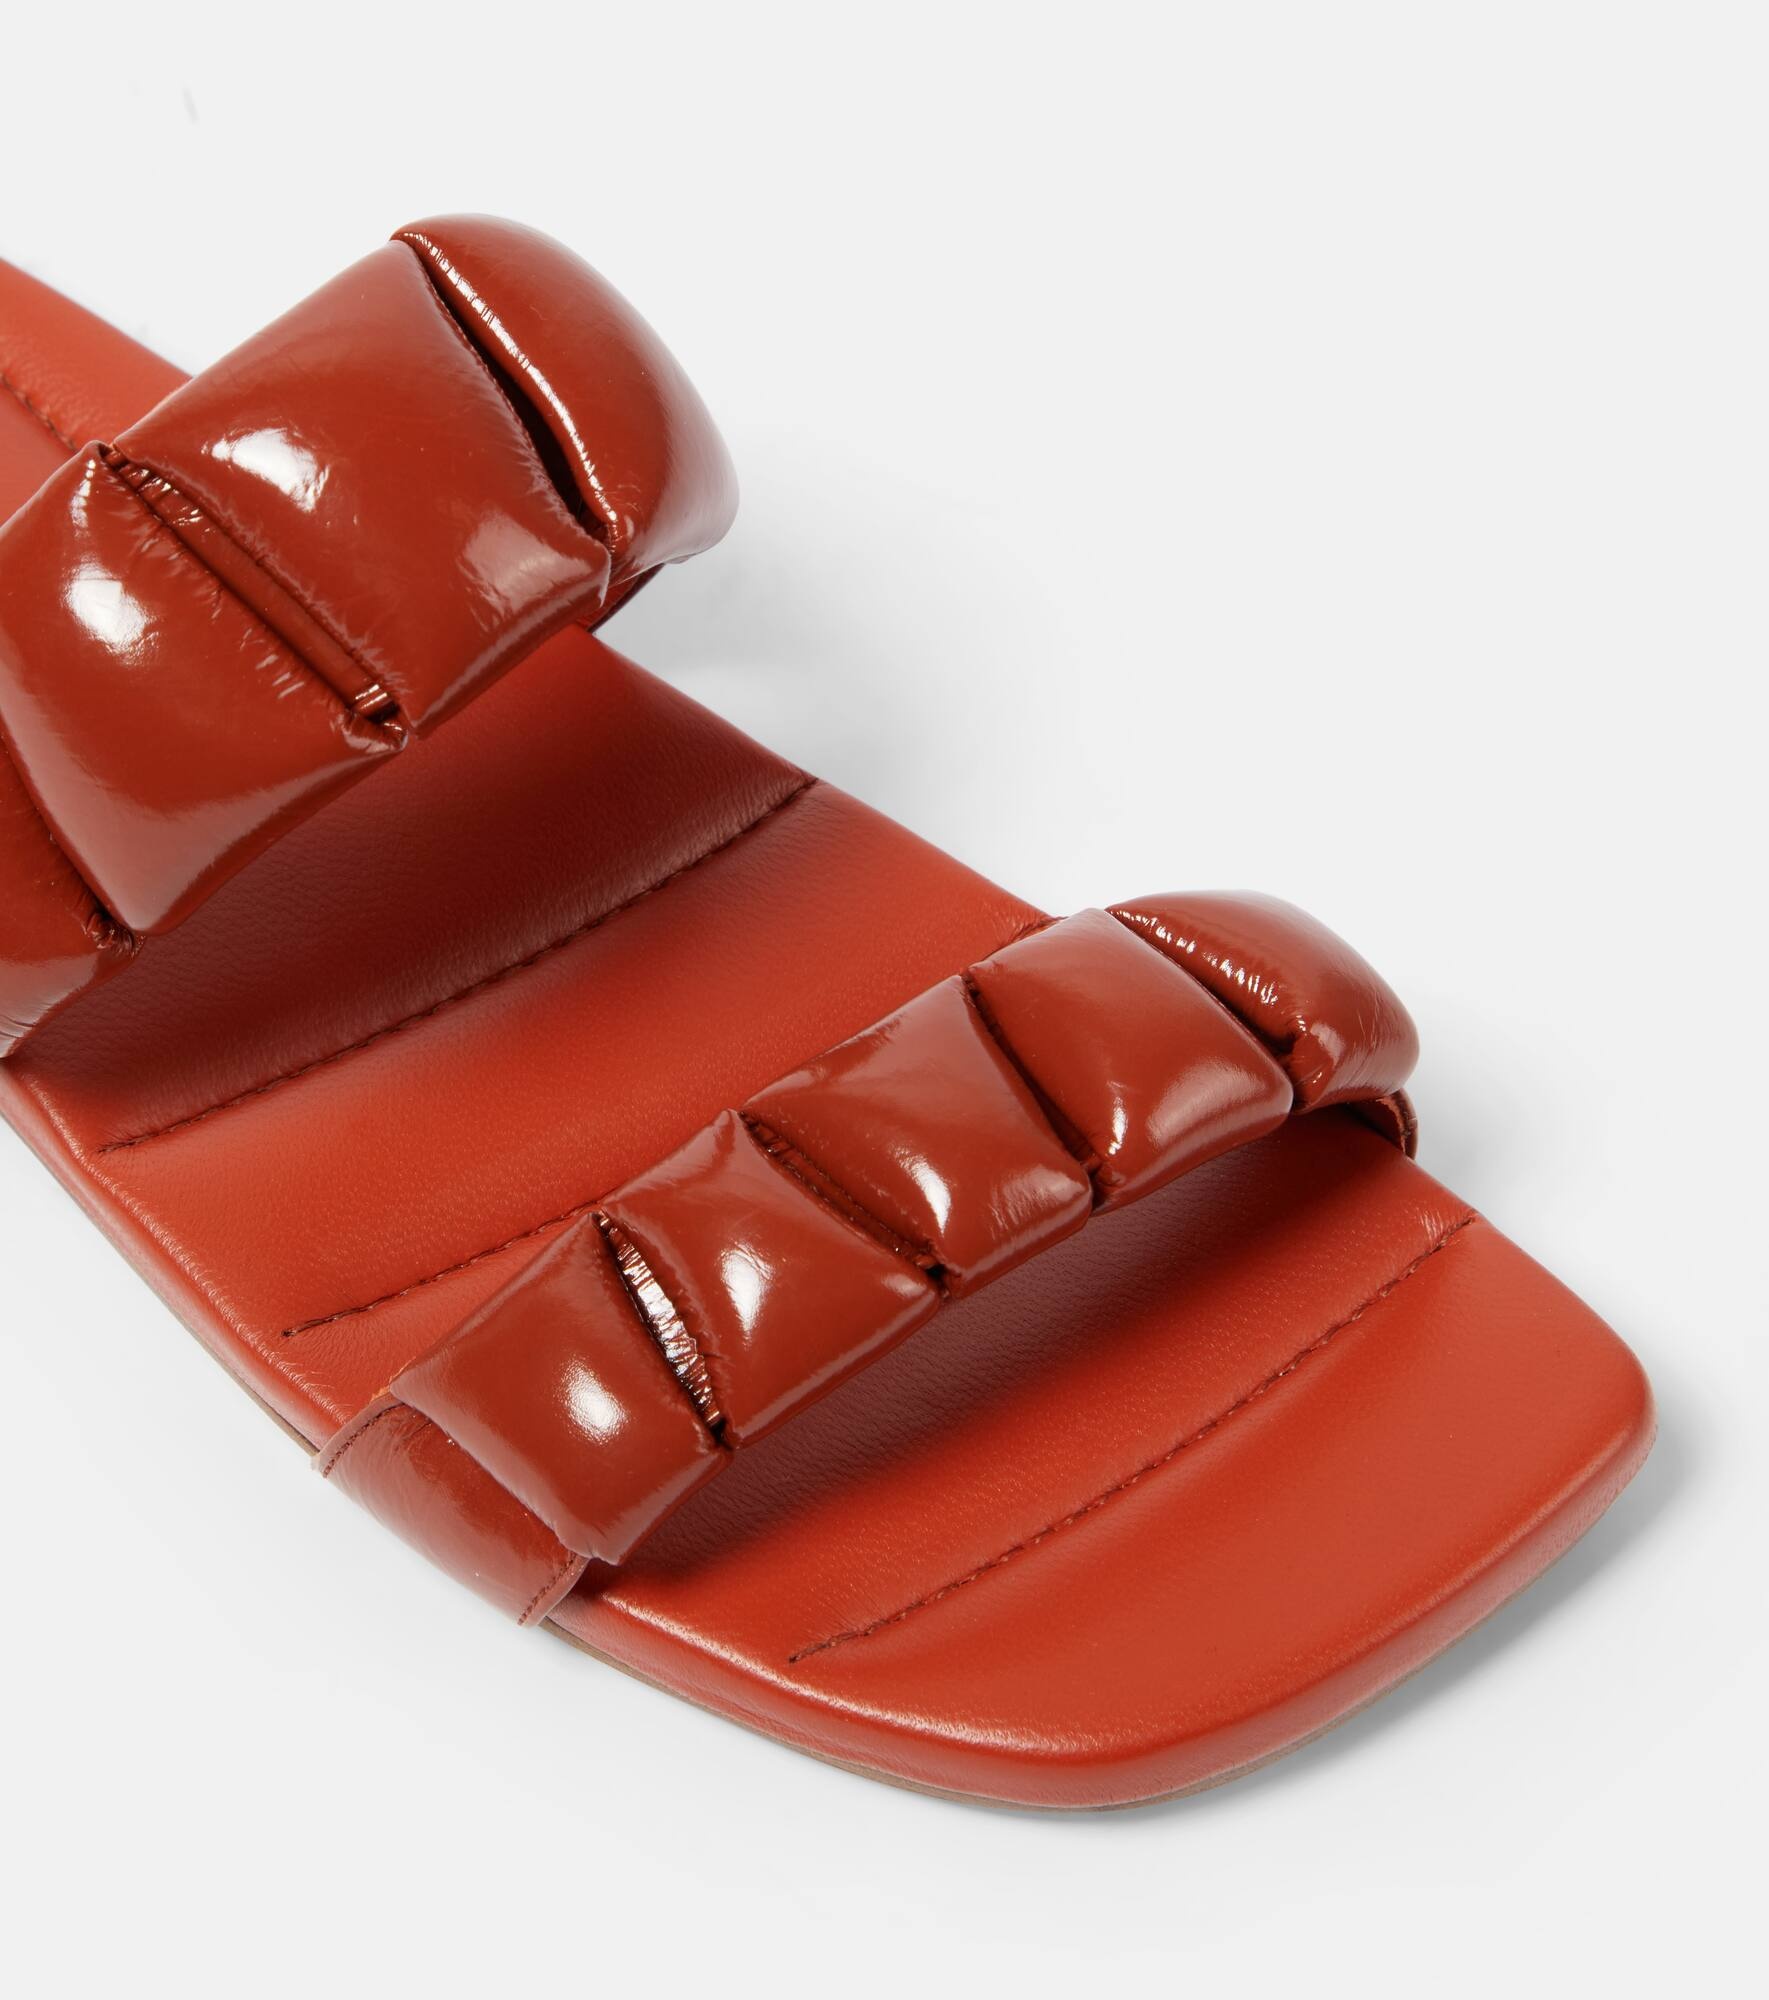 Leather slides - 6